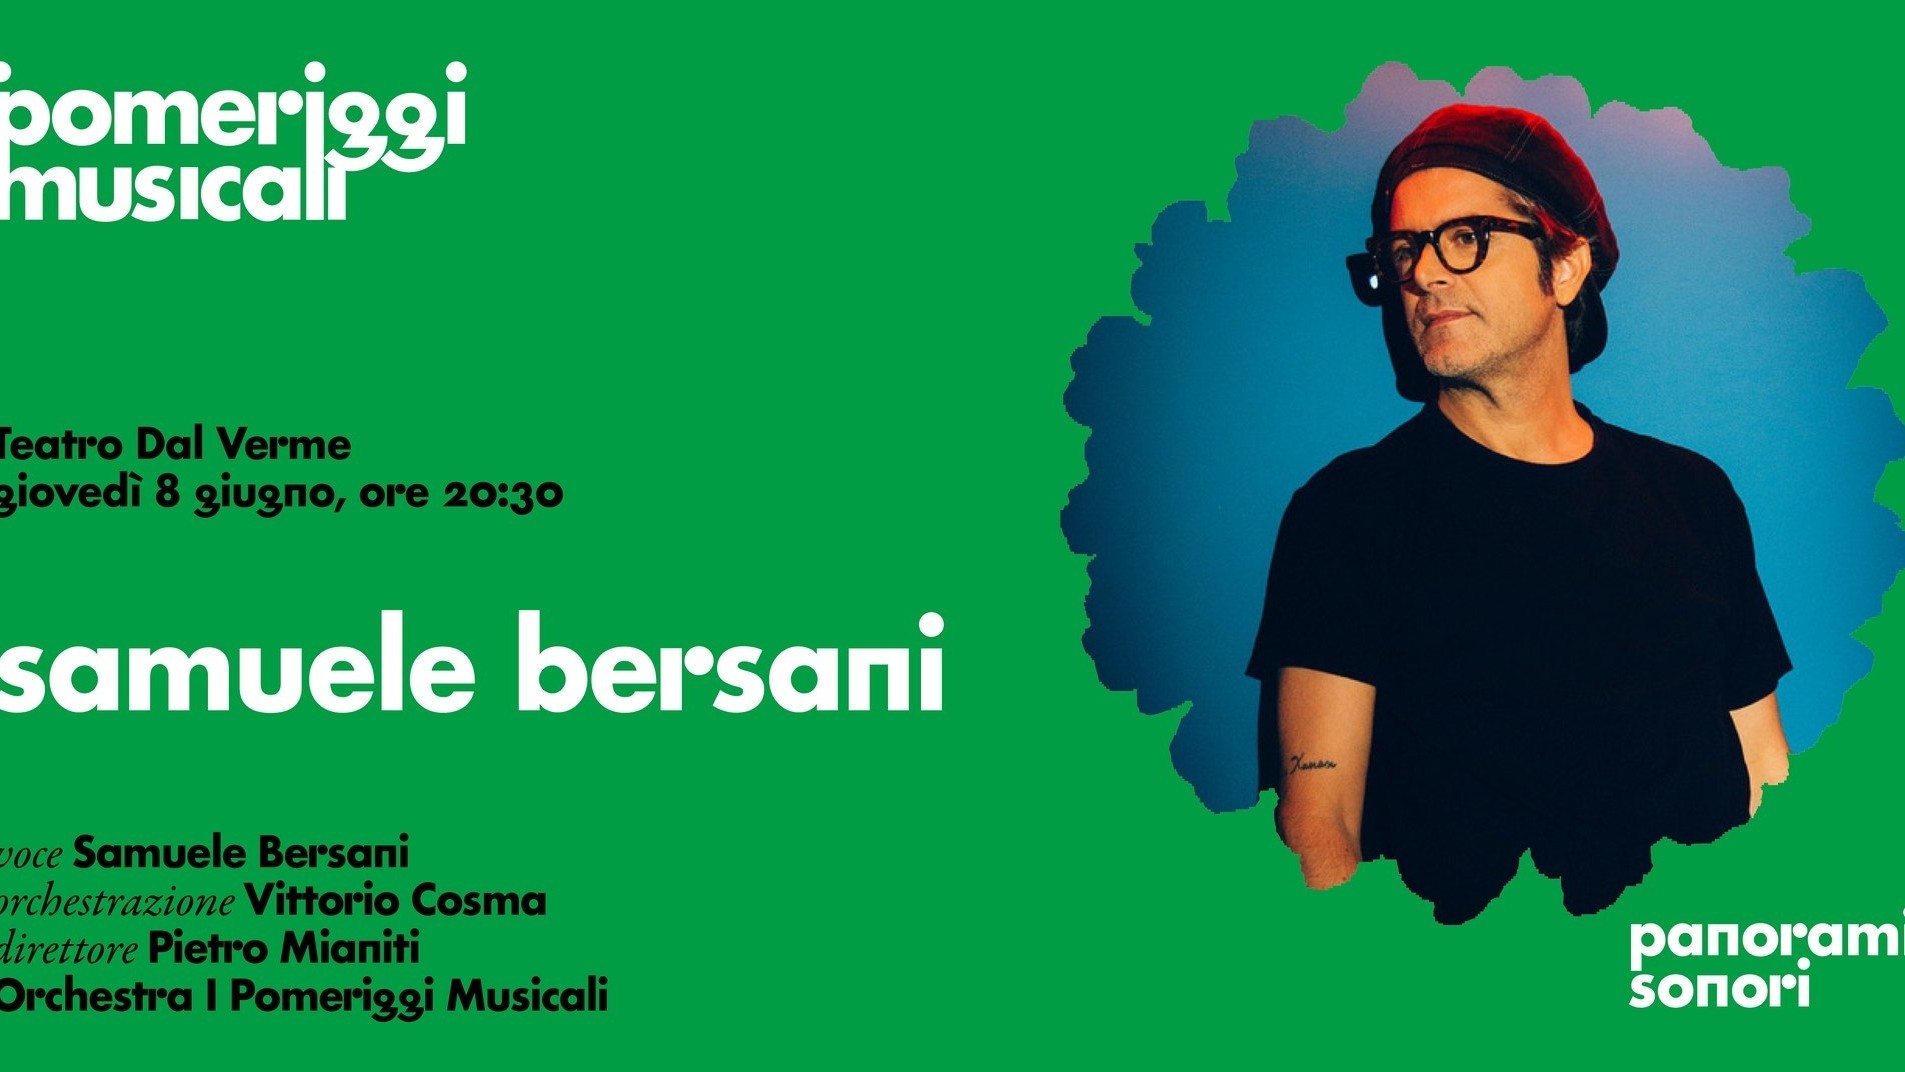 Samuele Bersani e Orchestra I Pomeriggi Musicali